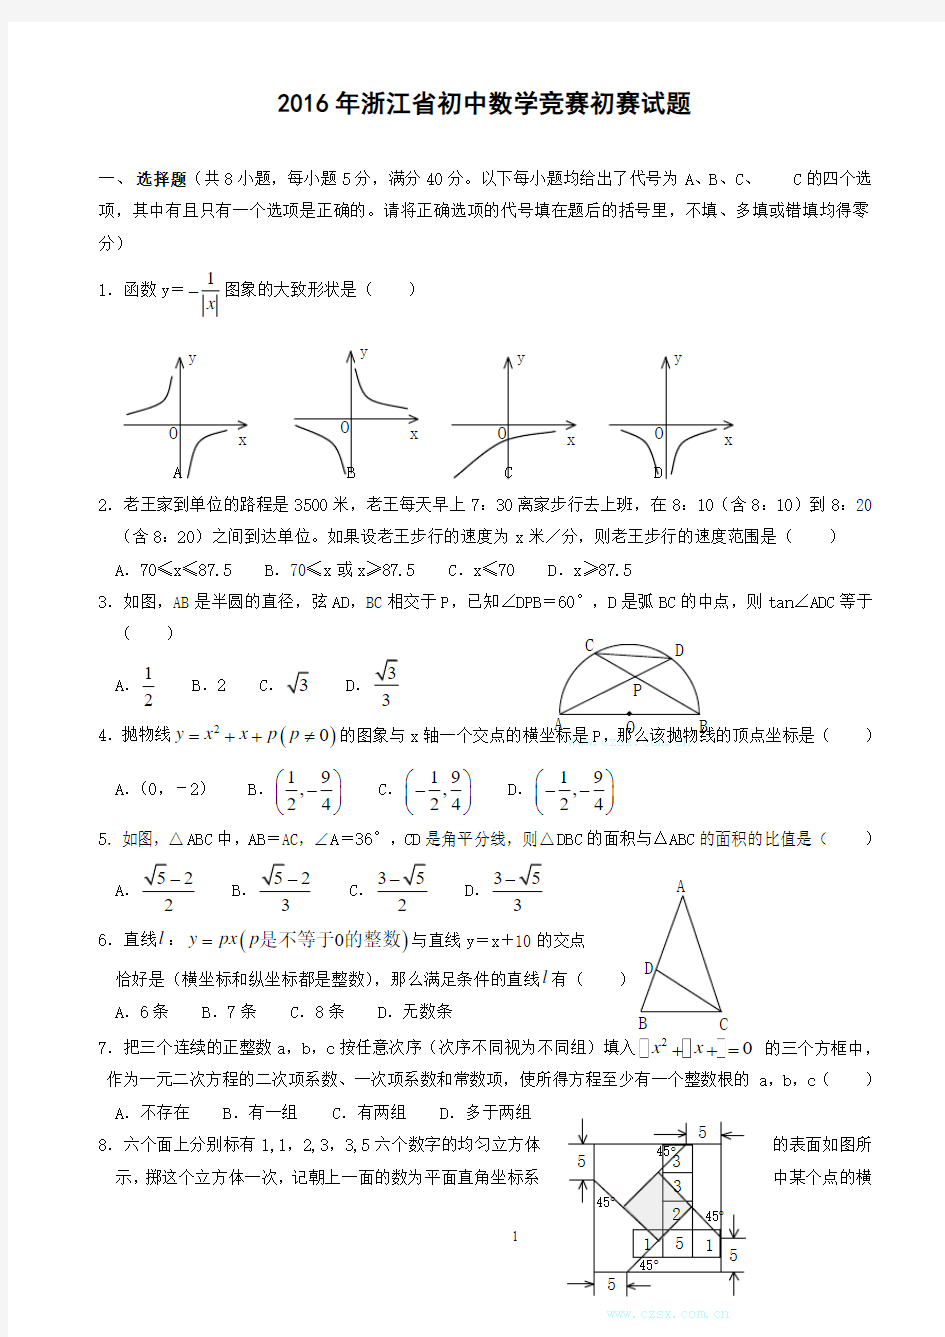 2016年浙江省初中数学竞赛初赛试题